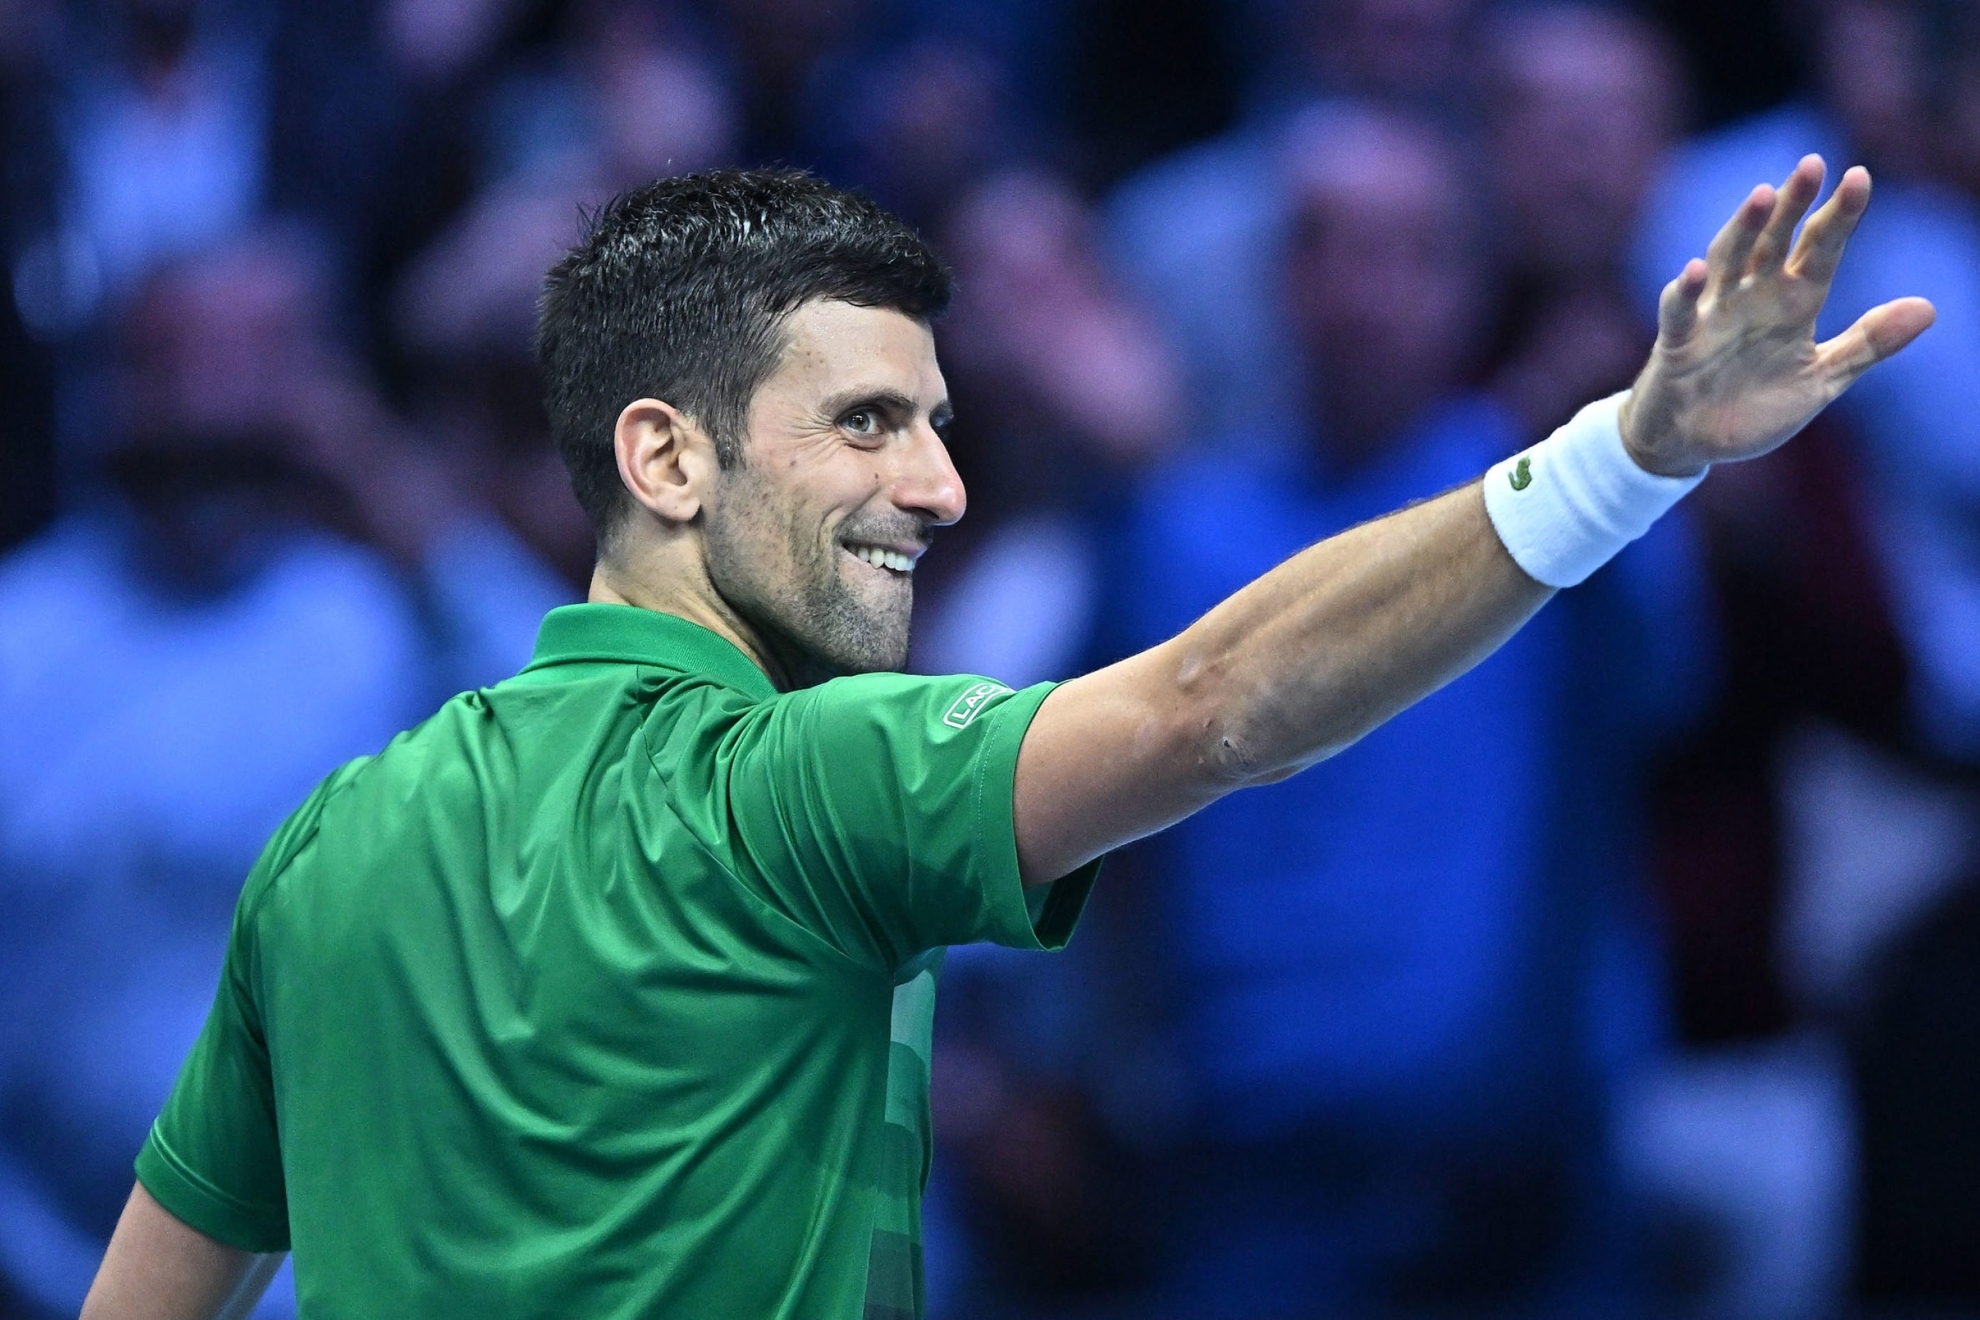 Djokovic celebrates a win